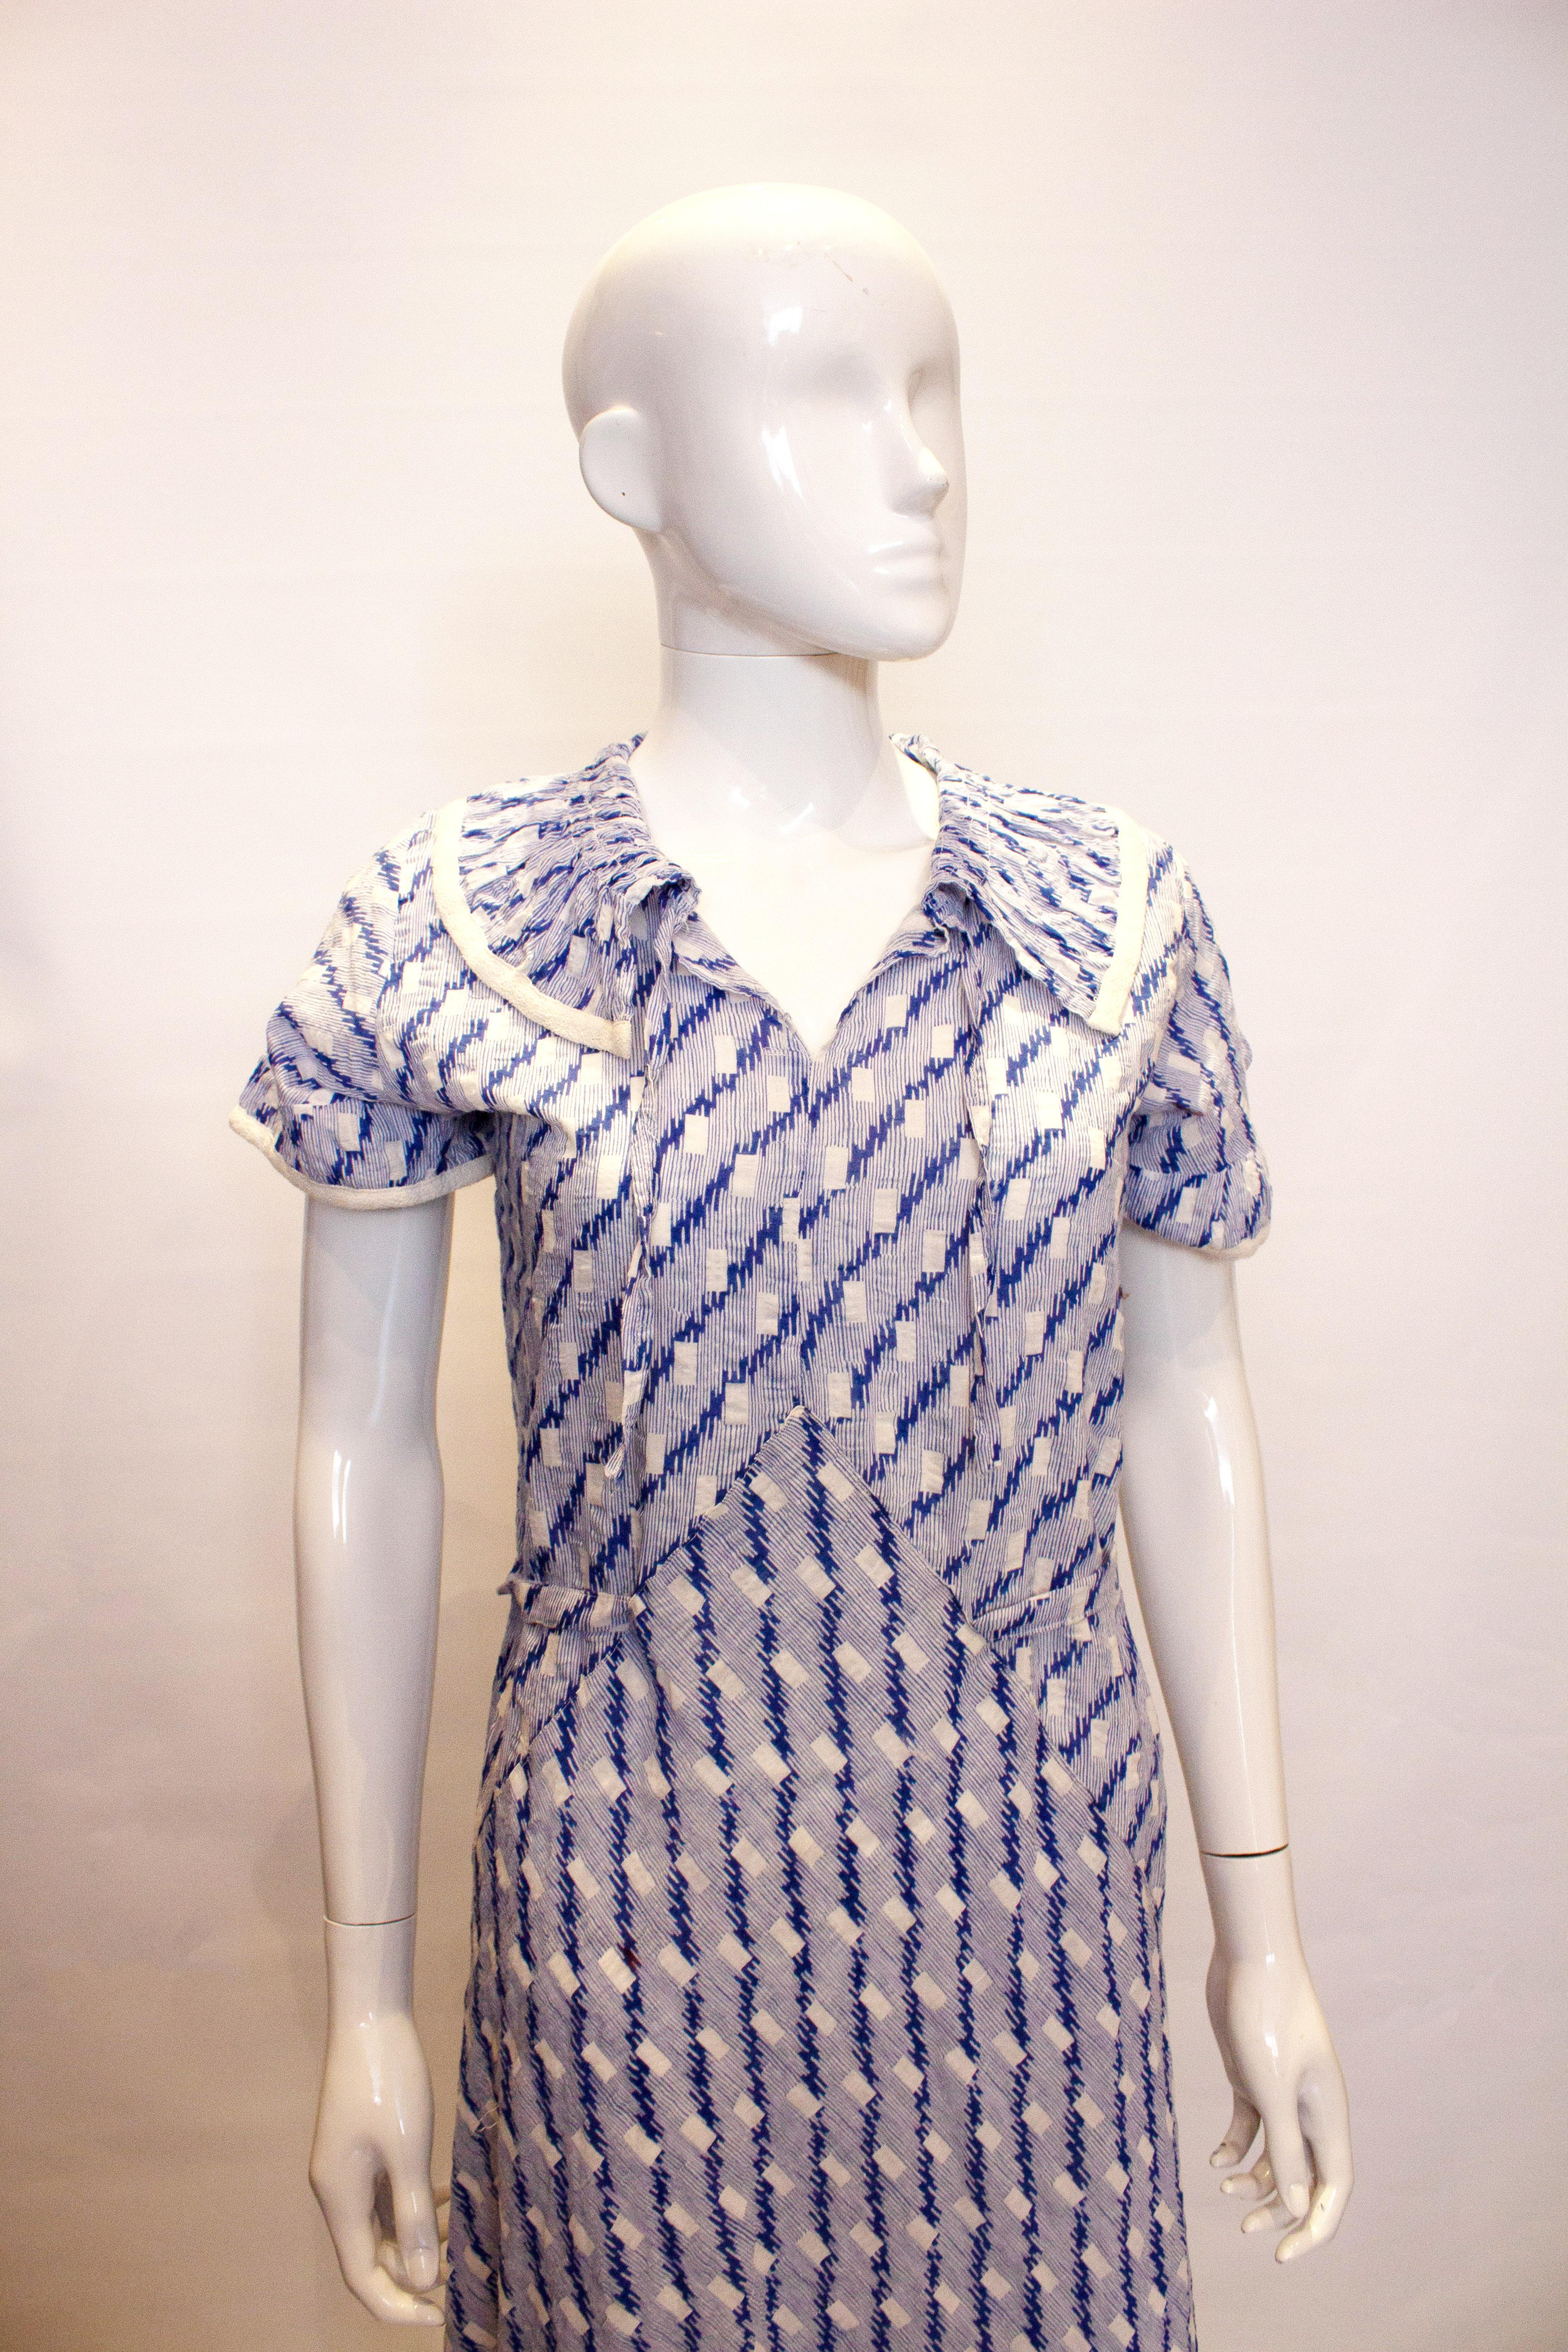 Ein hübsches und leicht zu tragendes Vintage-Baumwoll-Tageskleid aus den 1920er Jahren.  Das blau-weiß bedruckte Kleid hat einen gerafften Kragen mit weißer Borte und ein Band im Nacken. Es hat eine Schnürung an der Taille und einen weißen Saum an